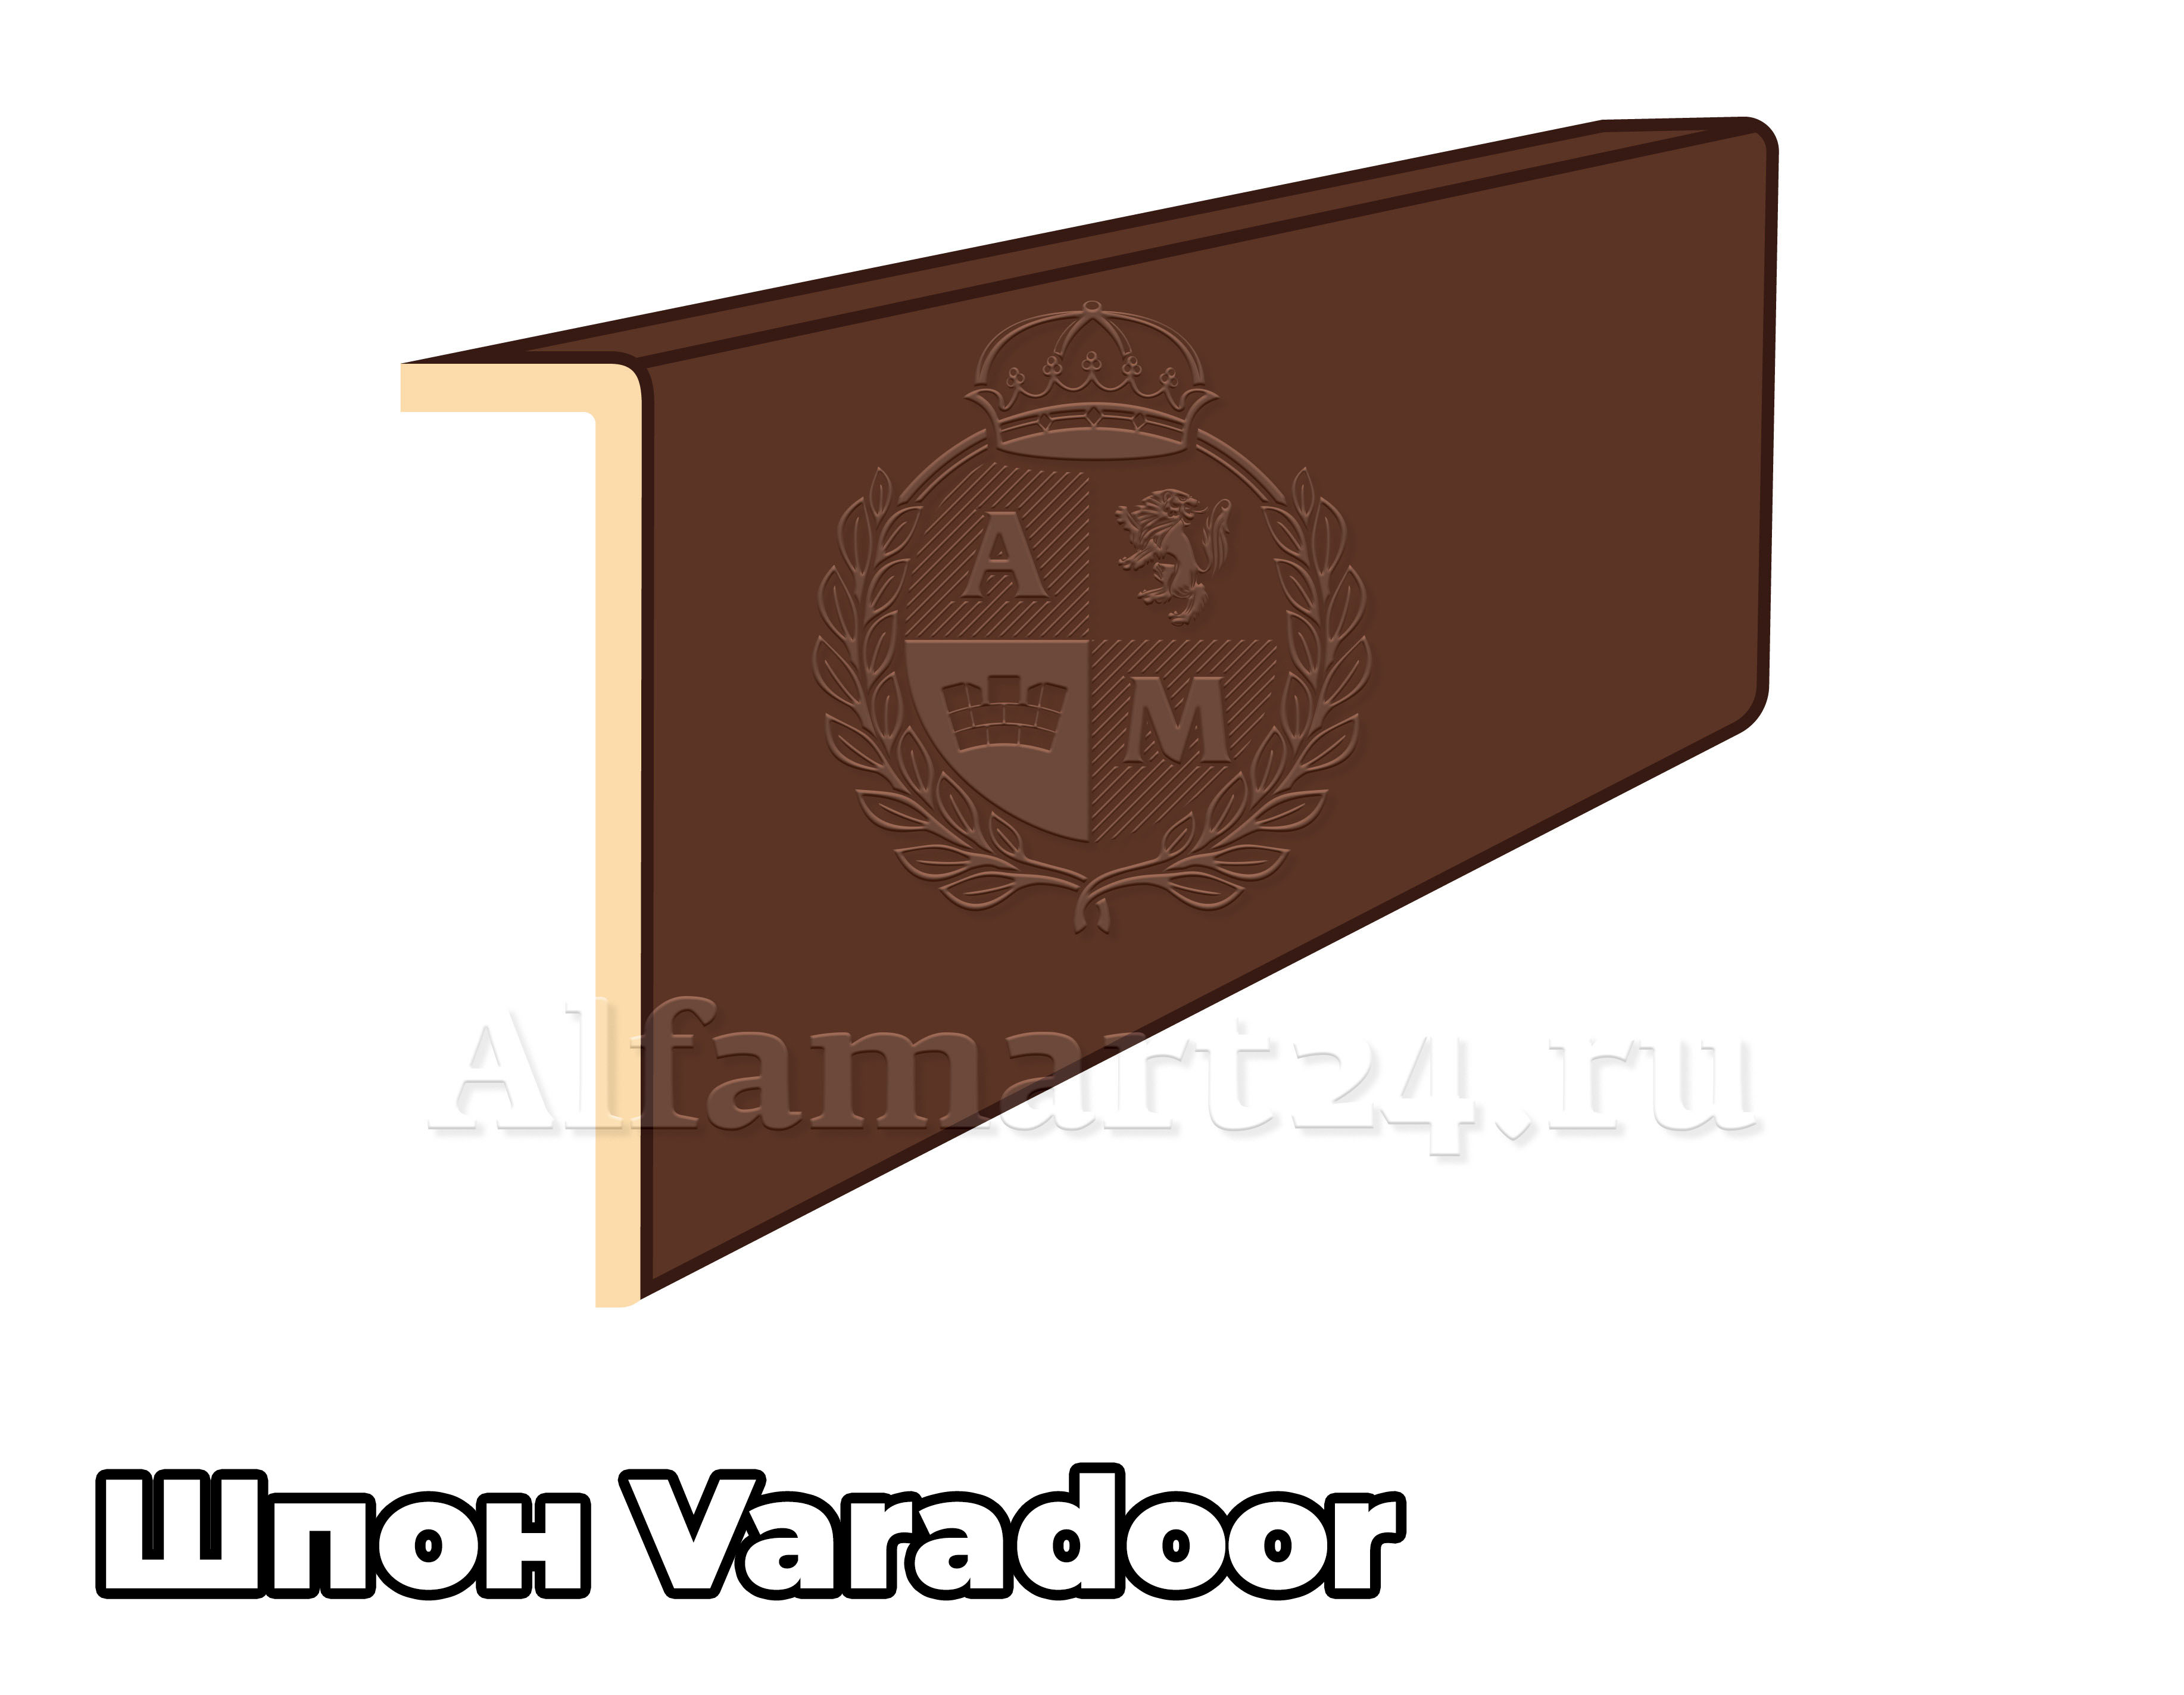 Наличник Varadoor (Т) (В цвет двери) - 1 штука